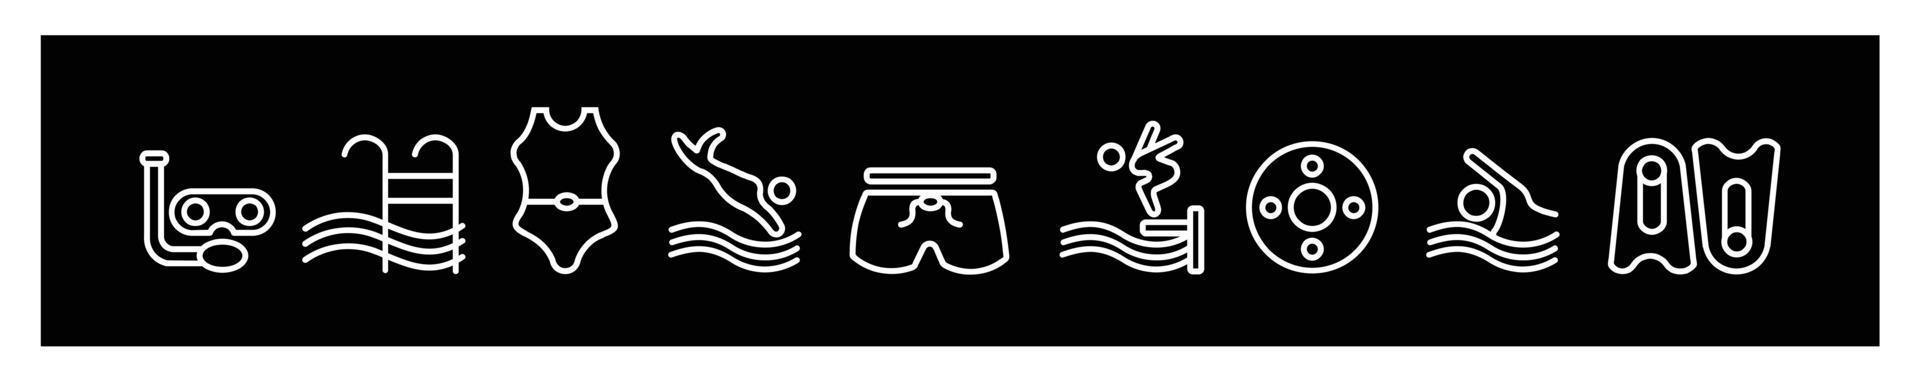 conjunto de iconos de piscina, icono de natación en diferentes iconos de ilustración vectorial de estilo para el diseño sobre fondo negro vector